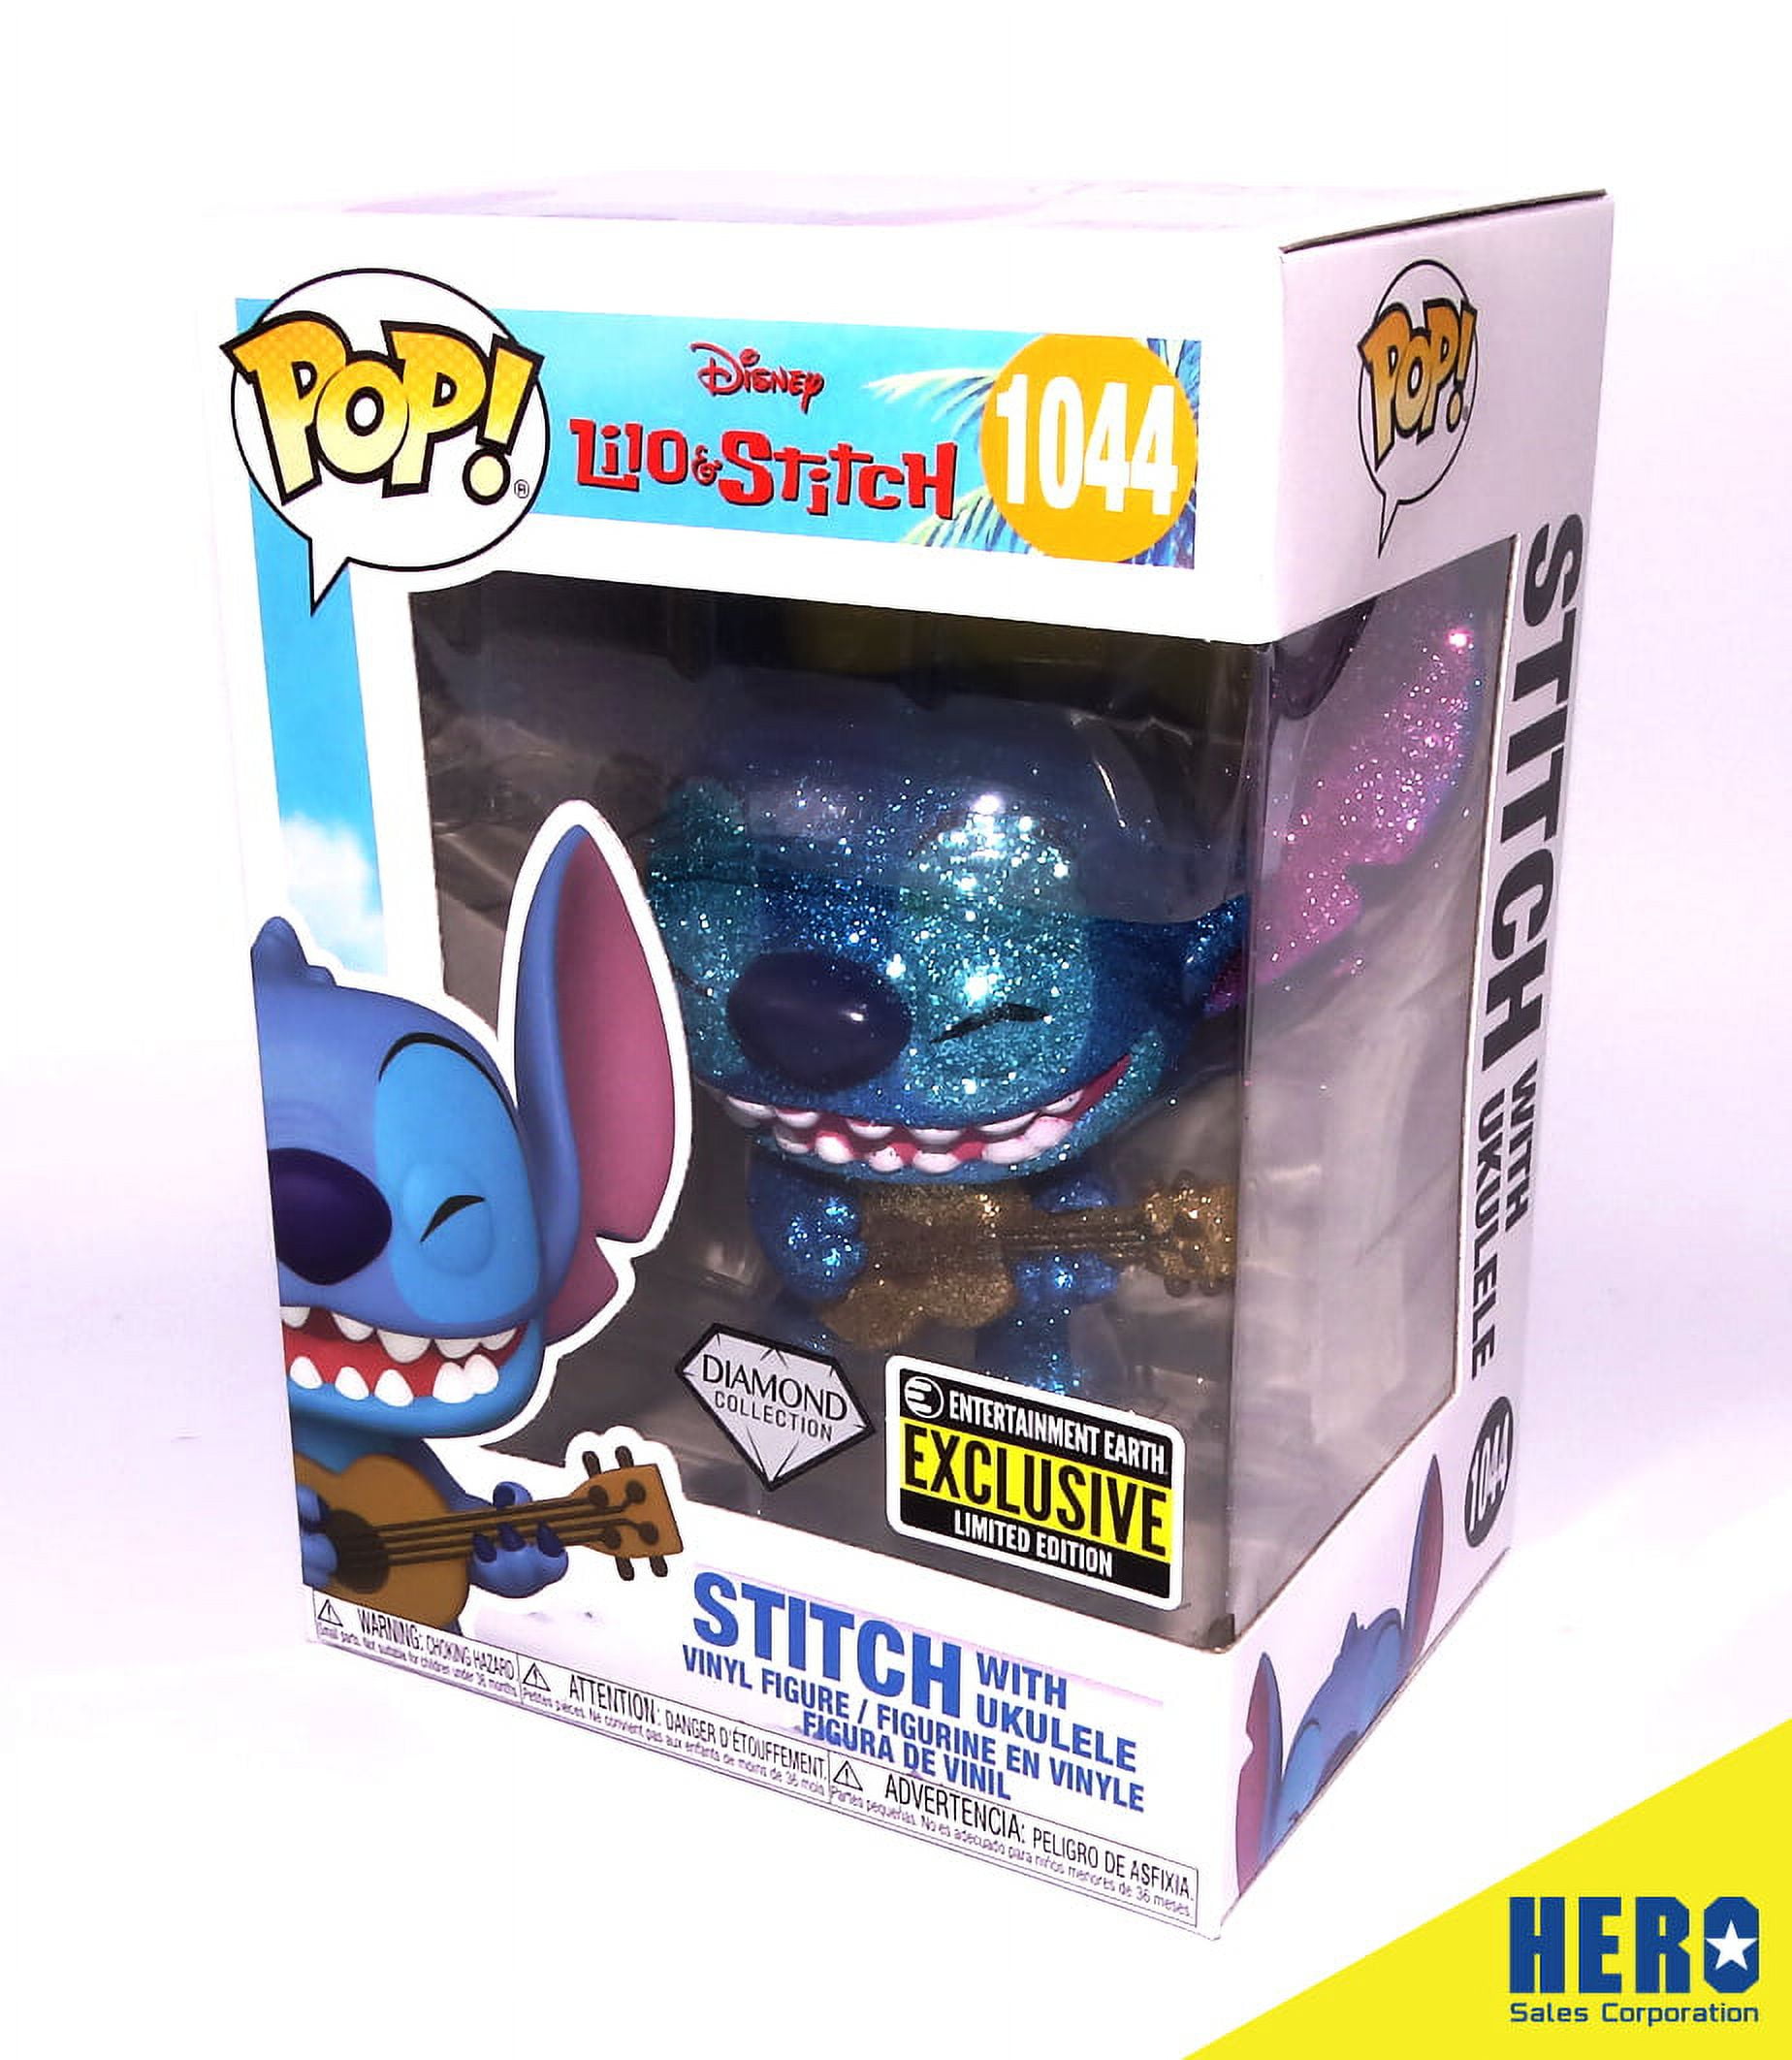 Funko Pop! Disney: Lilo and Stitch – Entertainment Earth Exclusive